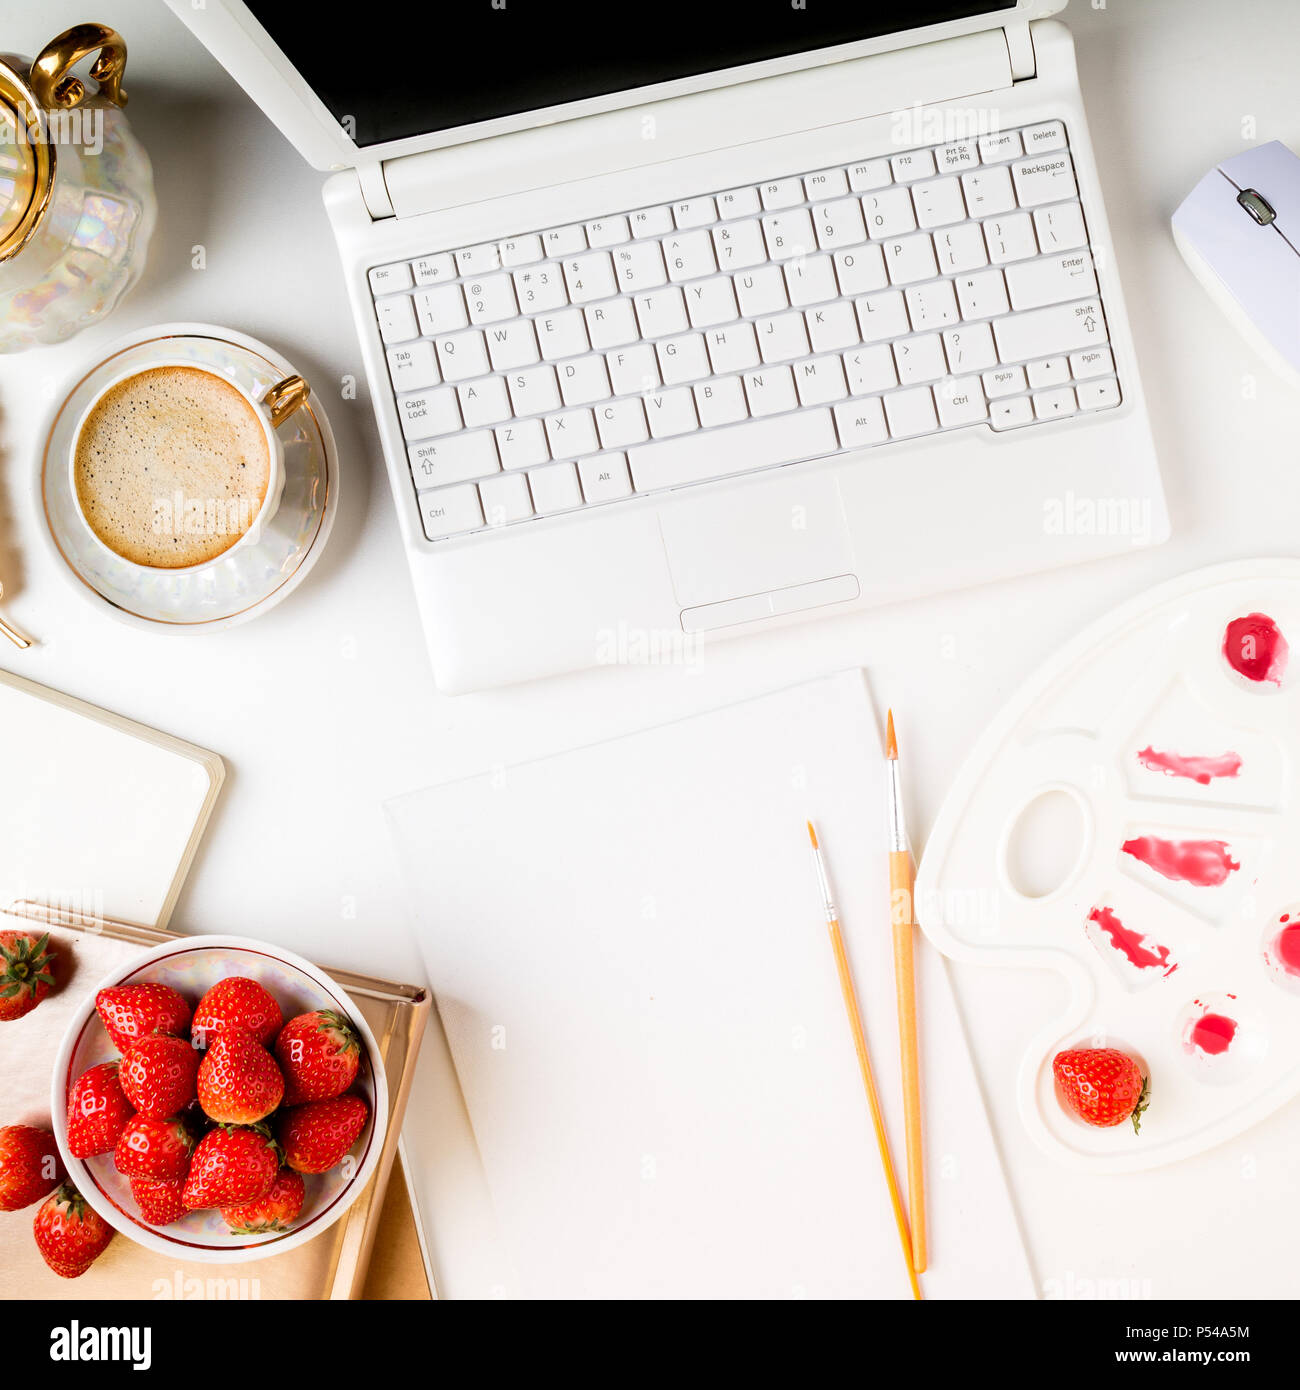 Flach trendy feminine Home Art Arbeitsbereich. Home office Schreibtisch mit Laptop, Notebook, Farben, Pinsel, Leinwand, frische Erdbeeren und Kaffee Tasse auf whi Stockfoto